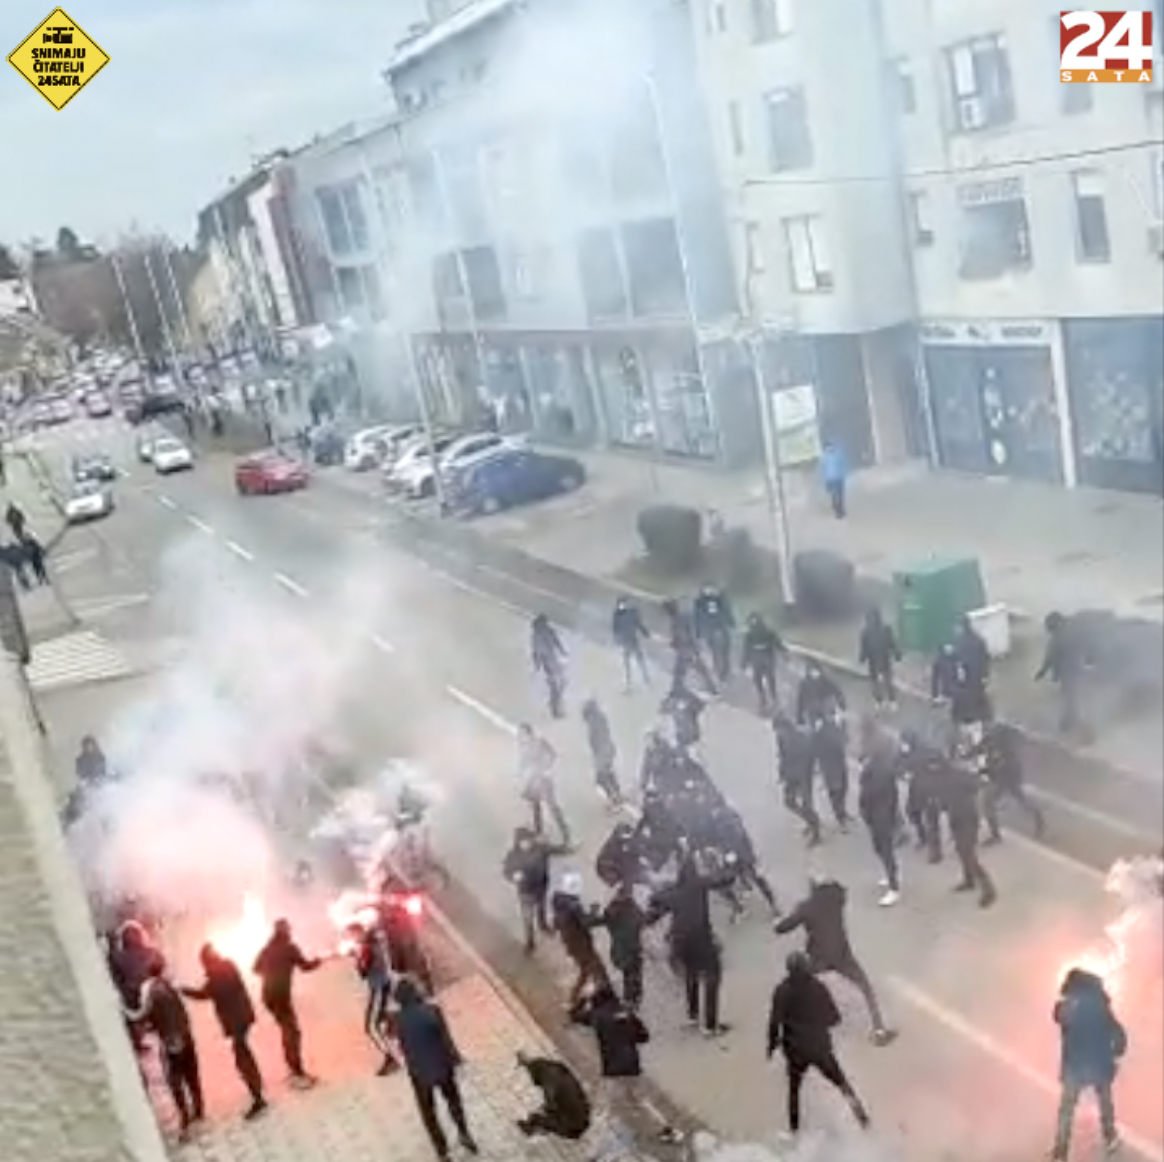 Neredi: Pogledajte nove snimke navijačkog kaosa u V. Gorici